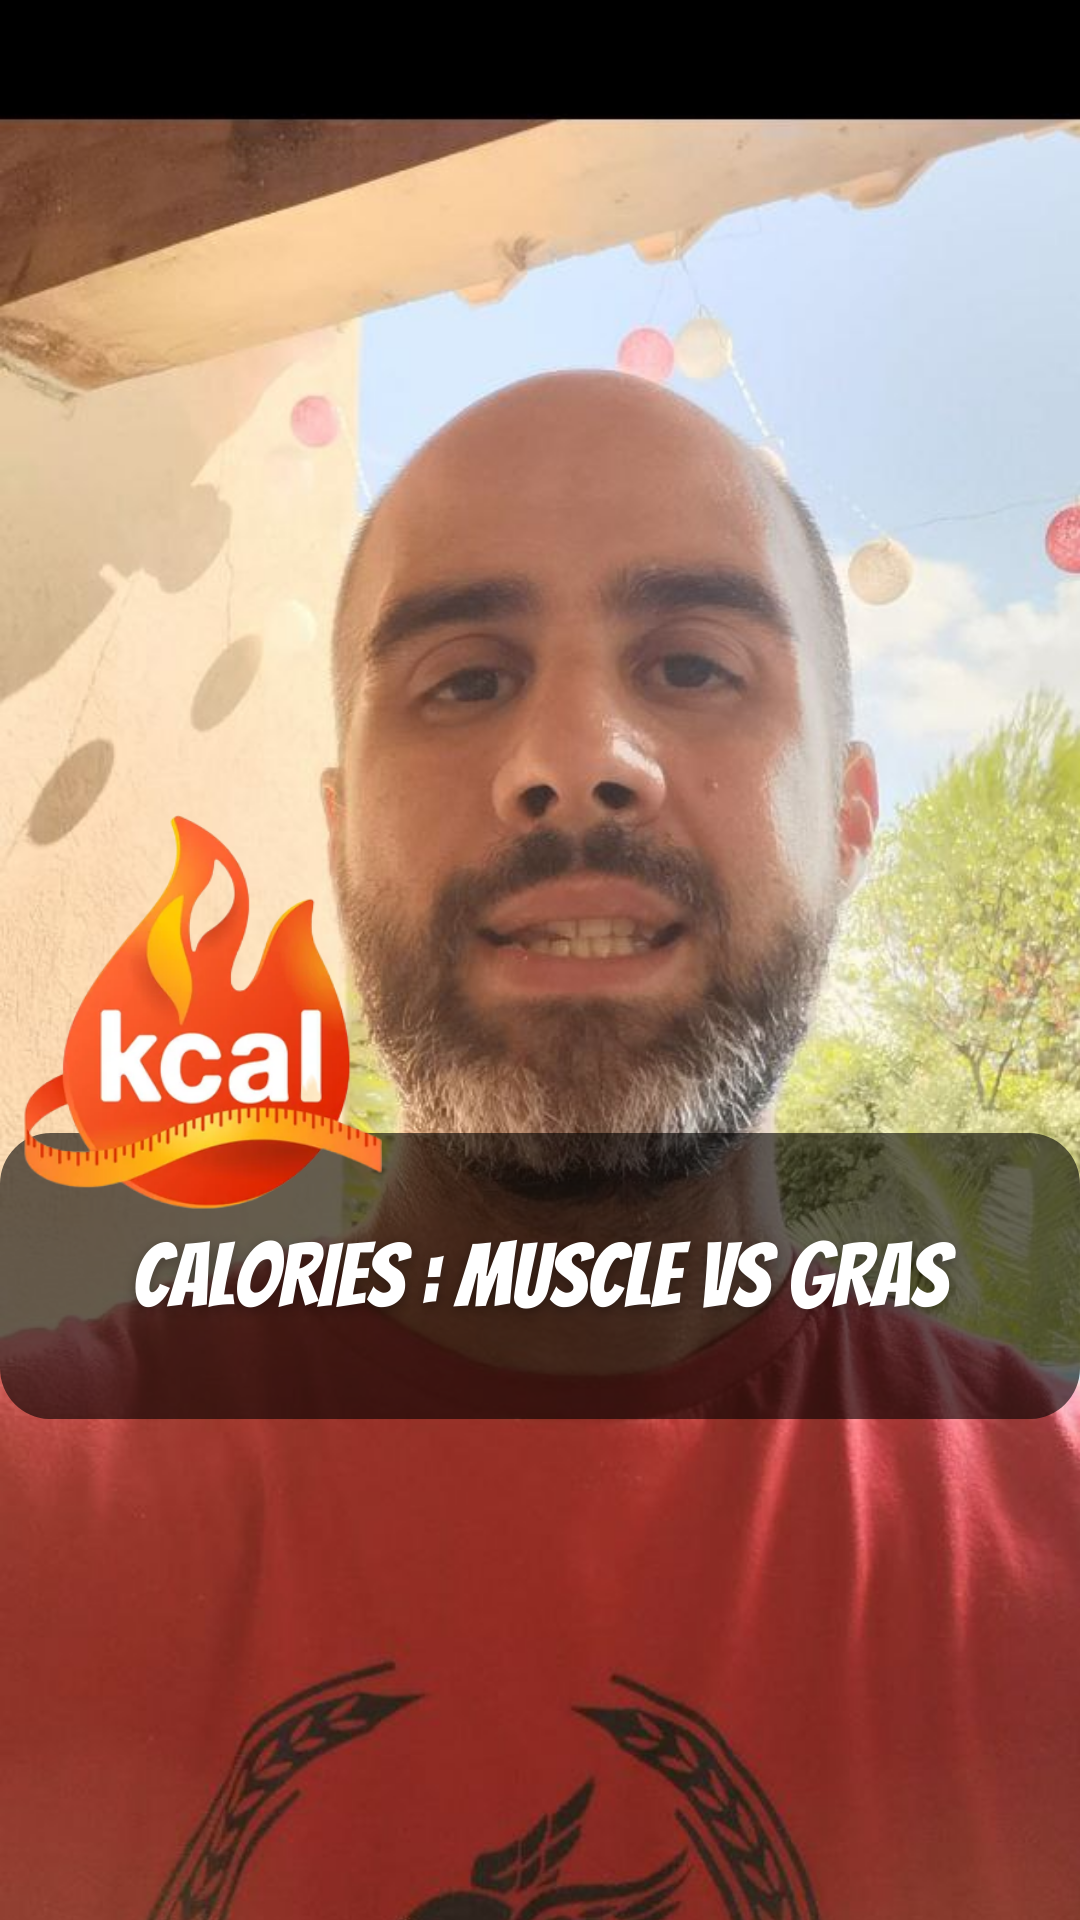 Calories : Muscles vs Gras